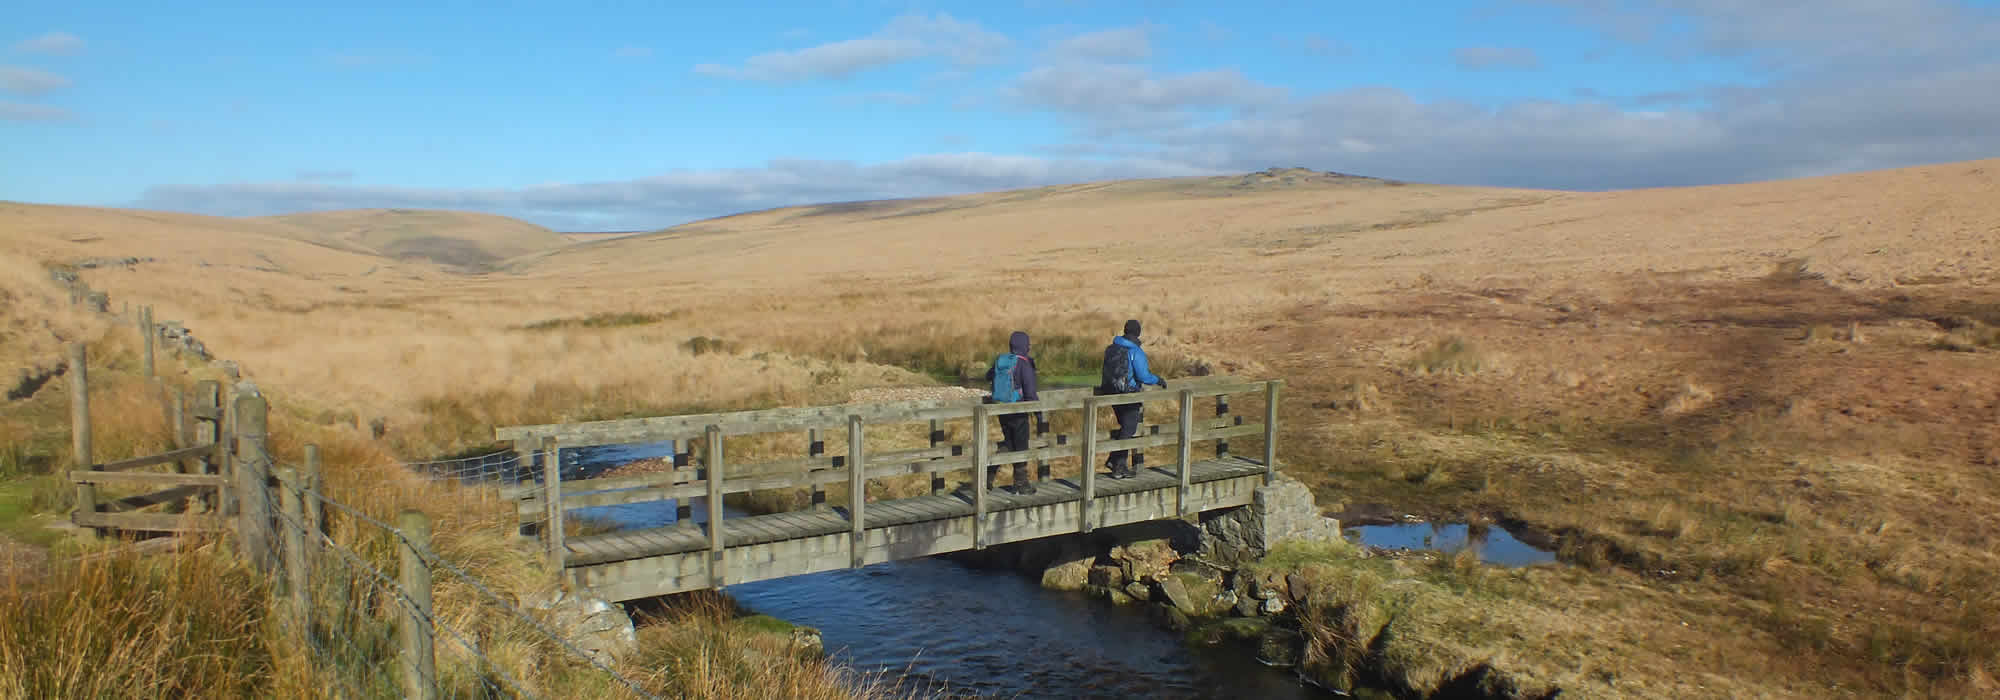 Walkers on Dartmoor National Park